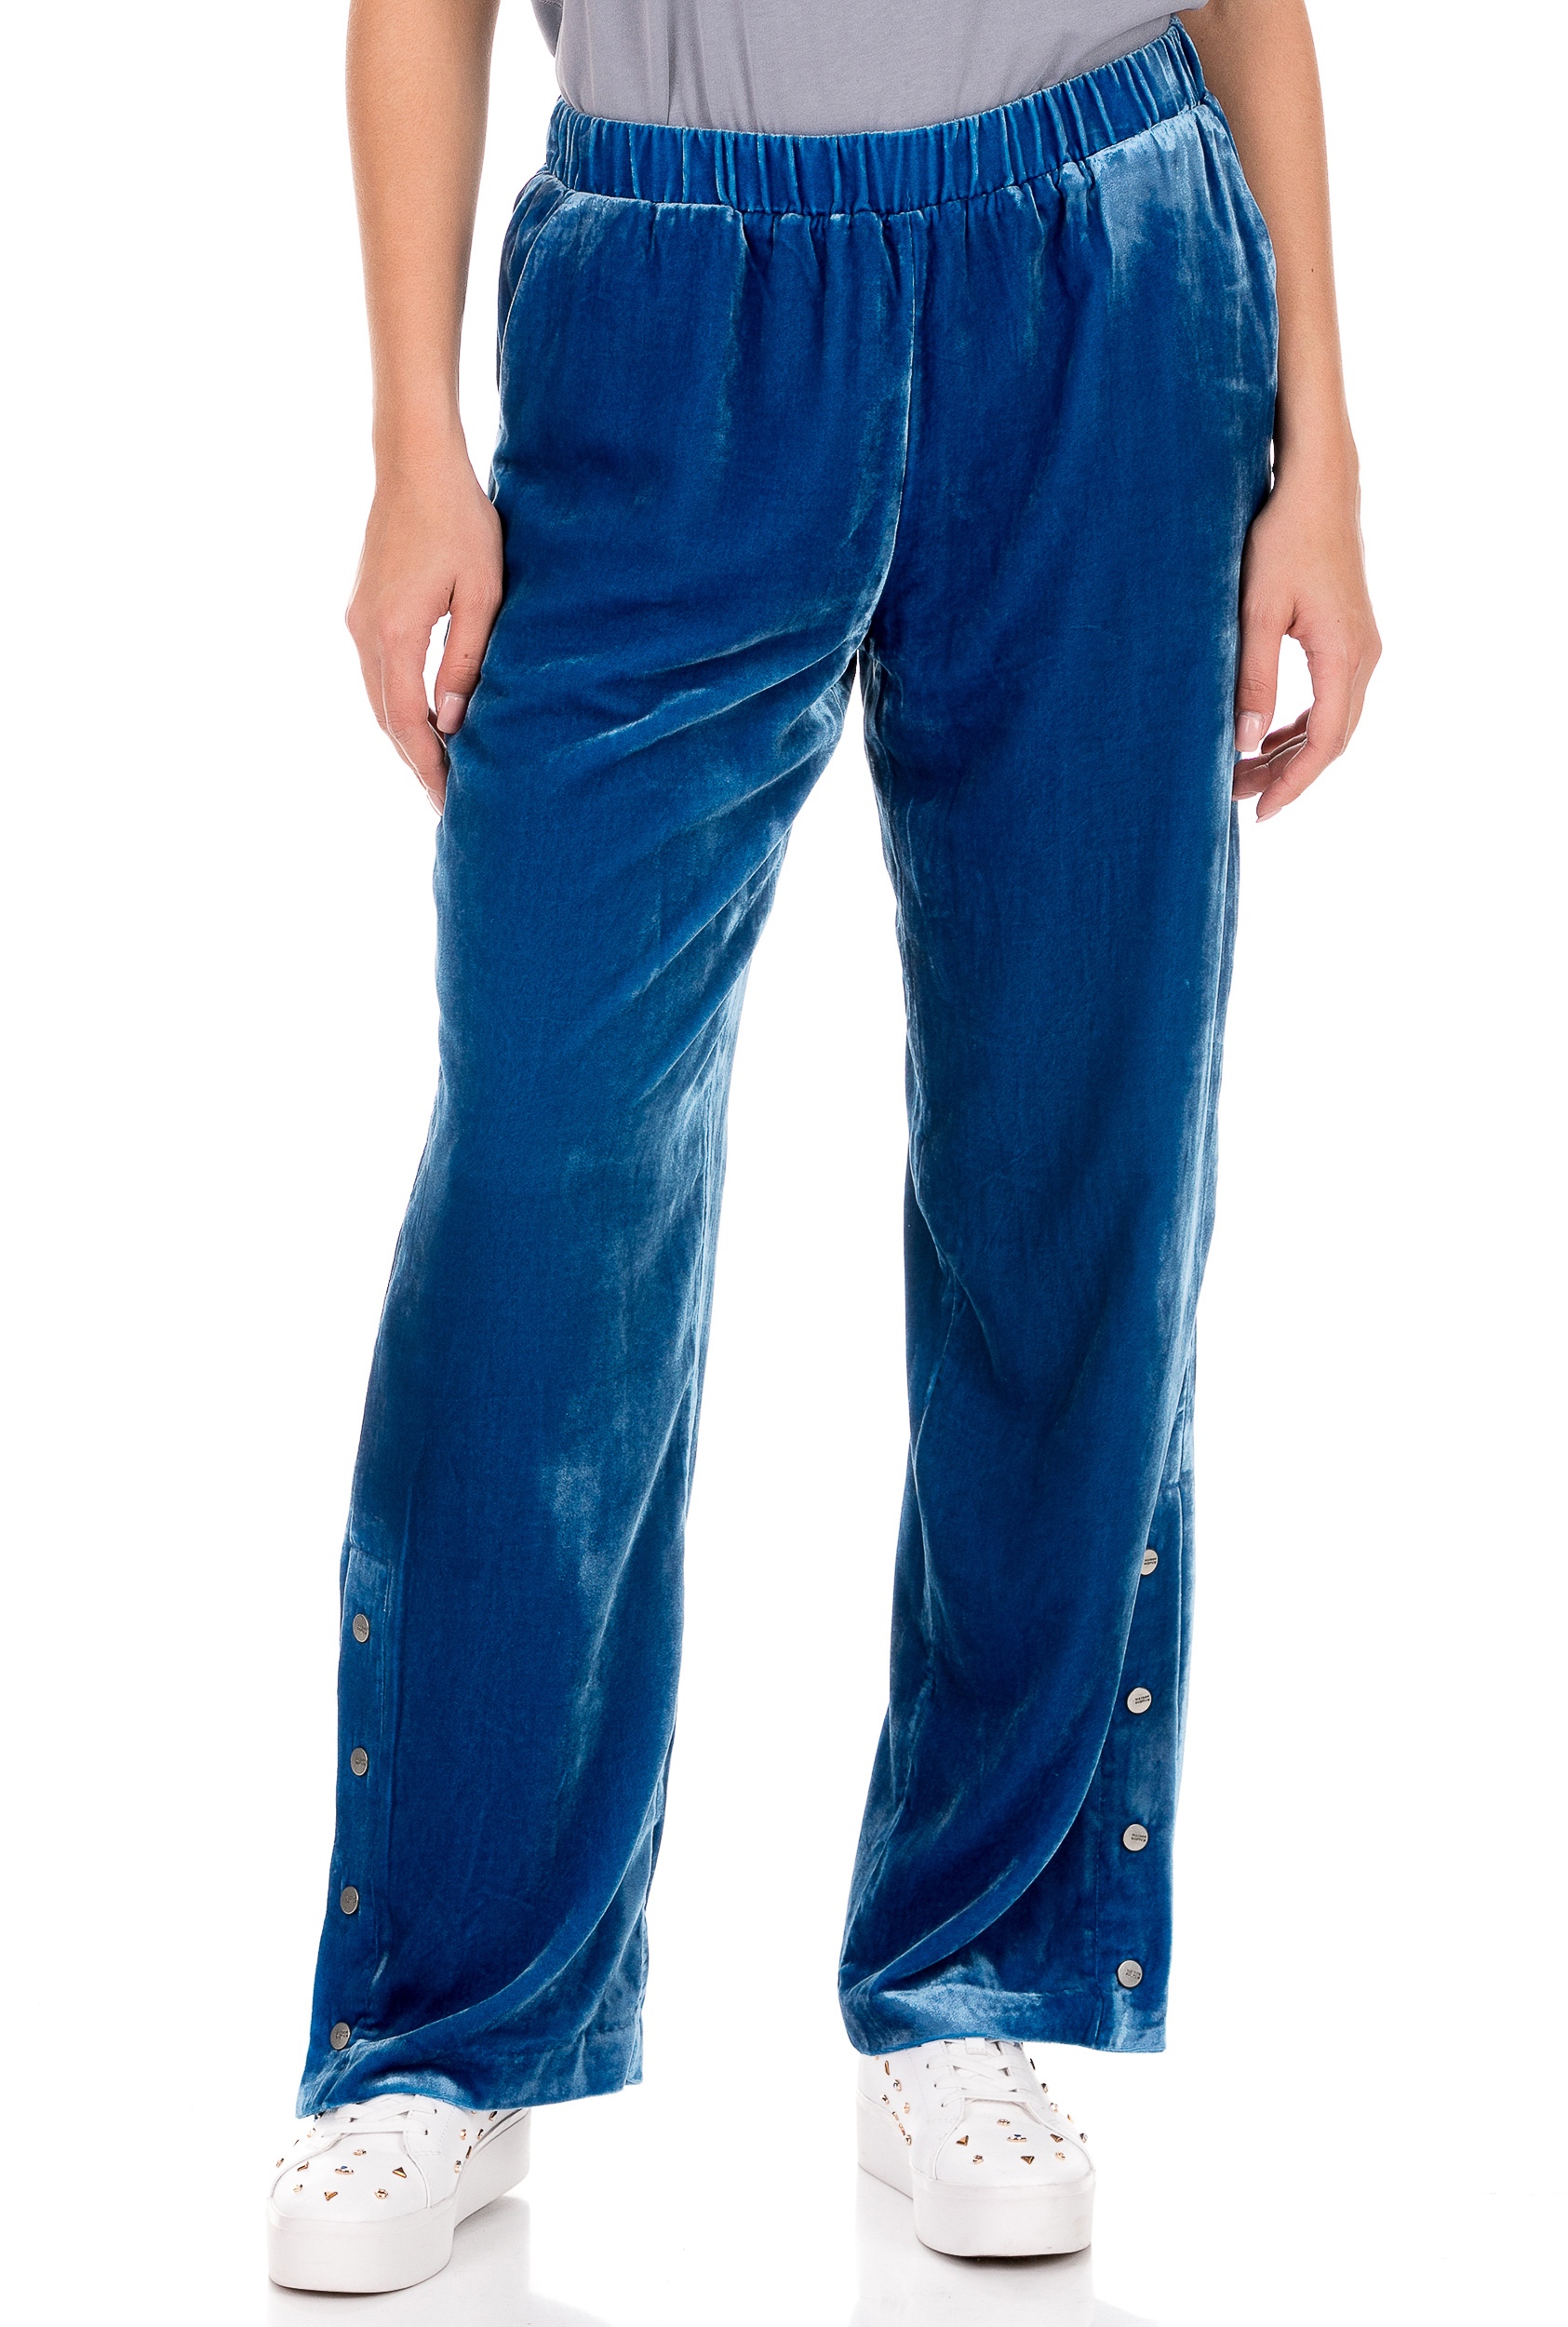 SCOTCH & SODA SCOTCH & SODA - Γυναικείο παντελόνι φόρμας SCOTCH & SODA μπλε